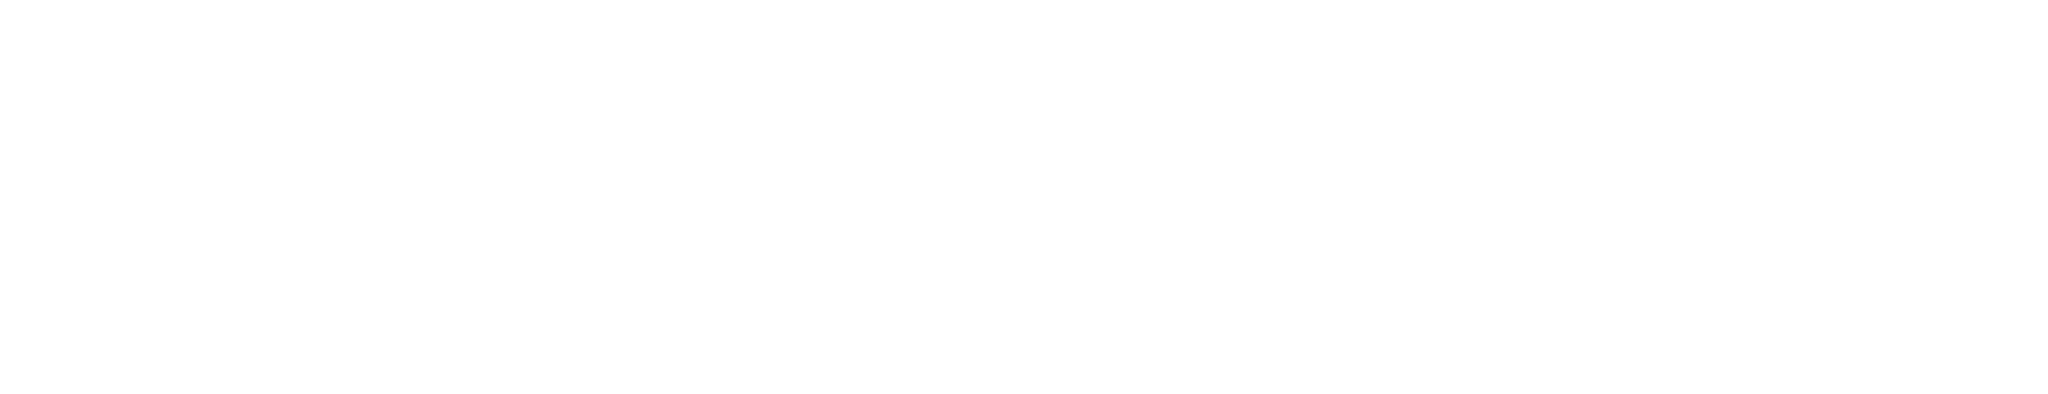 Martin Fuller - Logo heavenbound_New